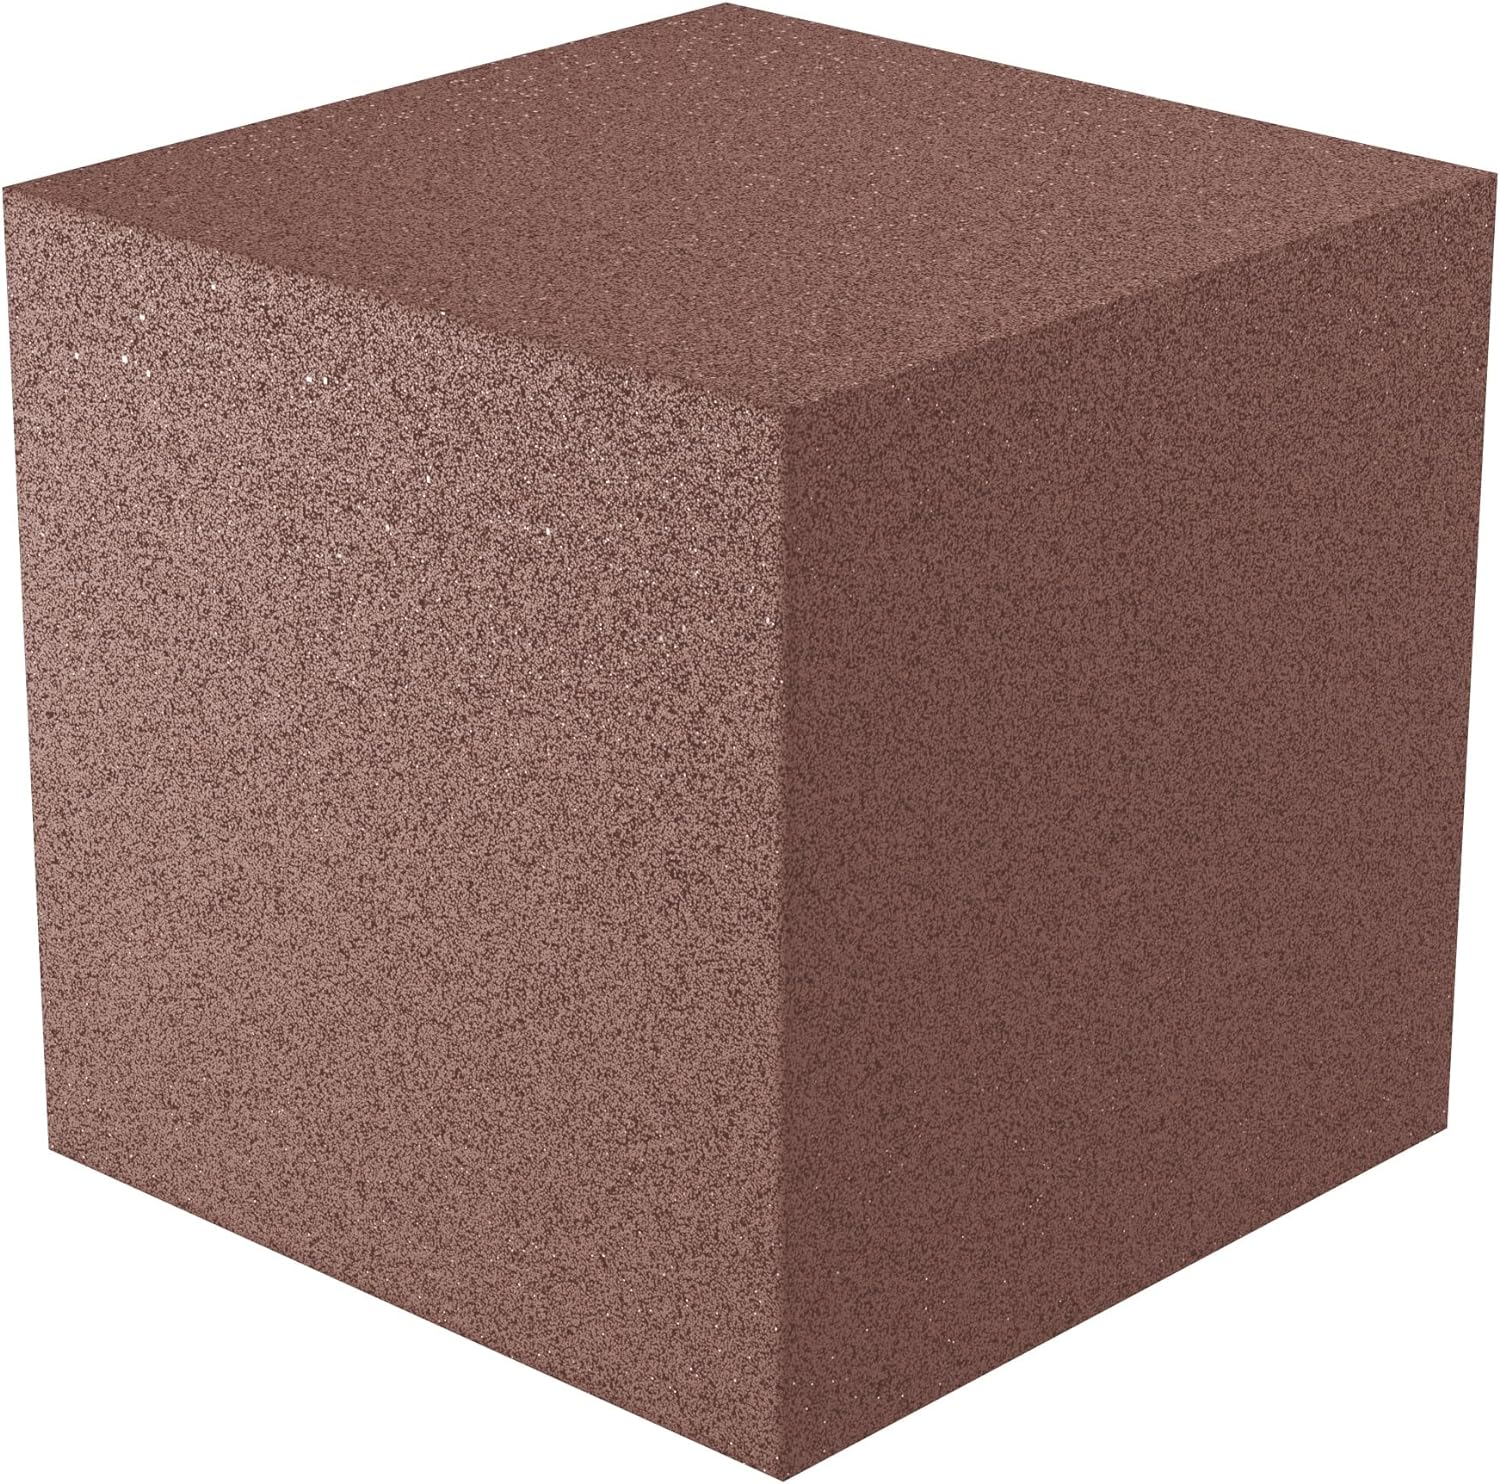 12x12x12 acoustic foam corner block - brown foam square